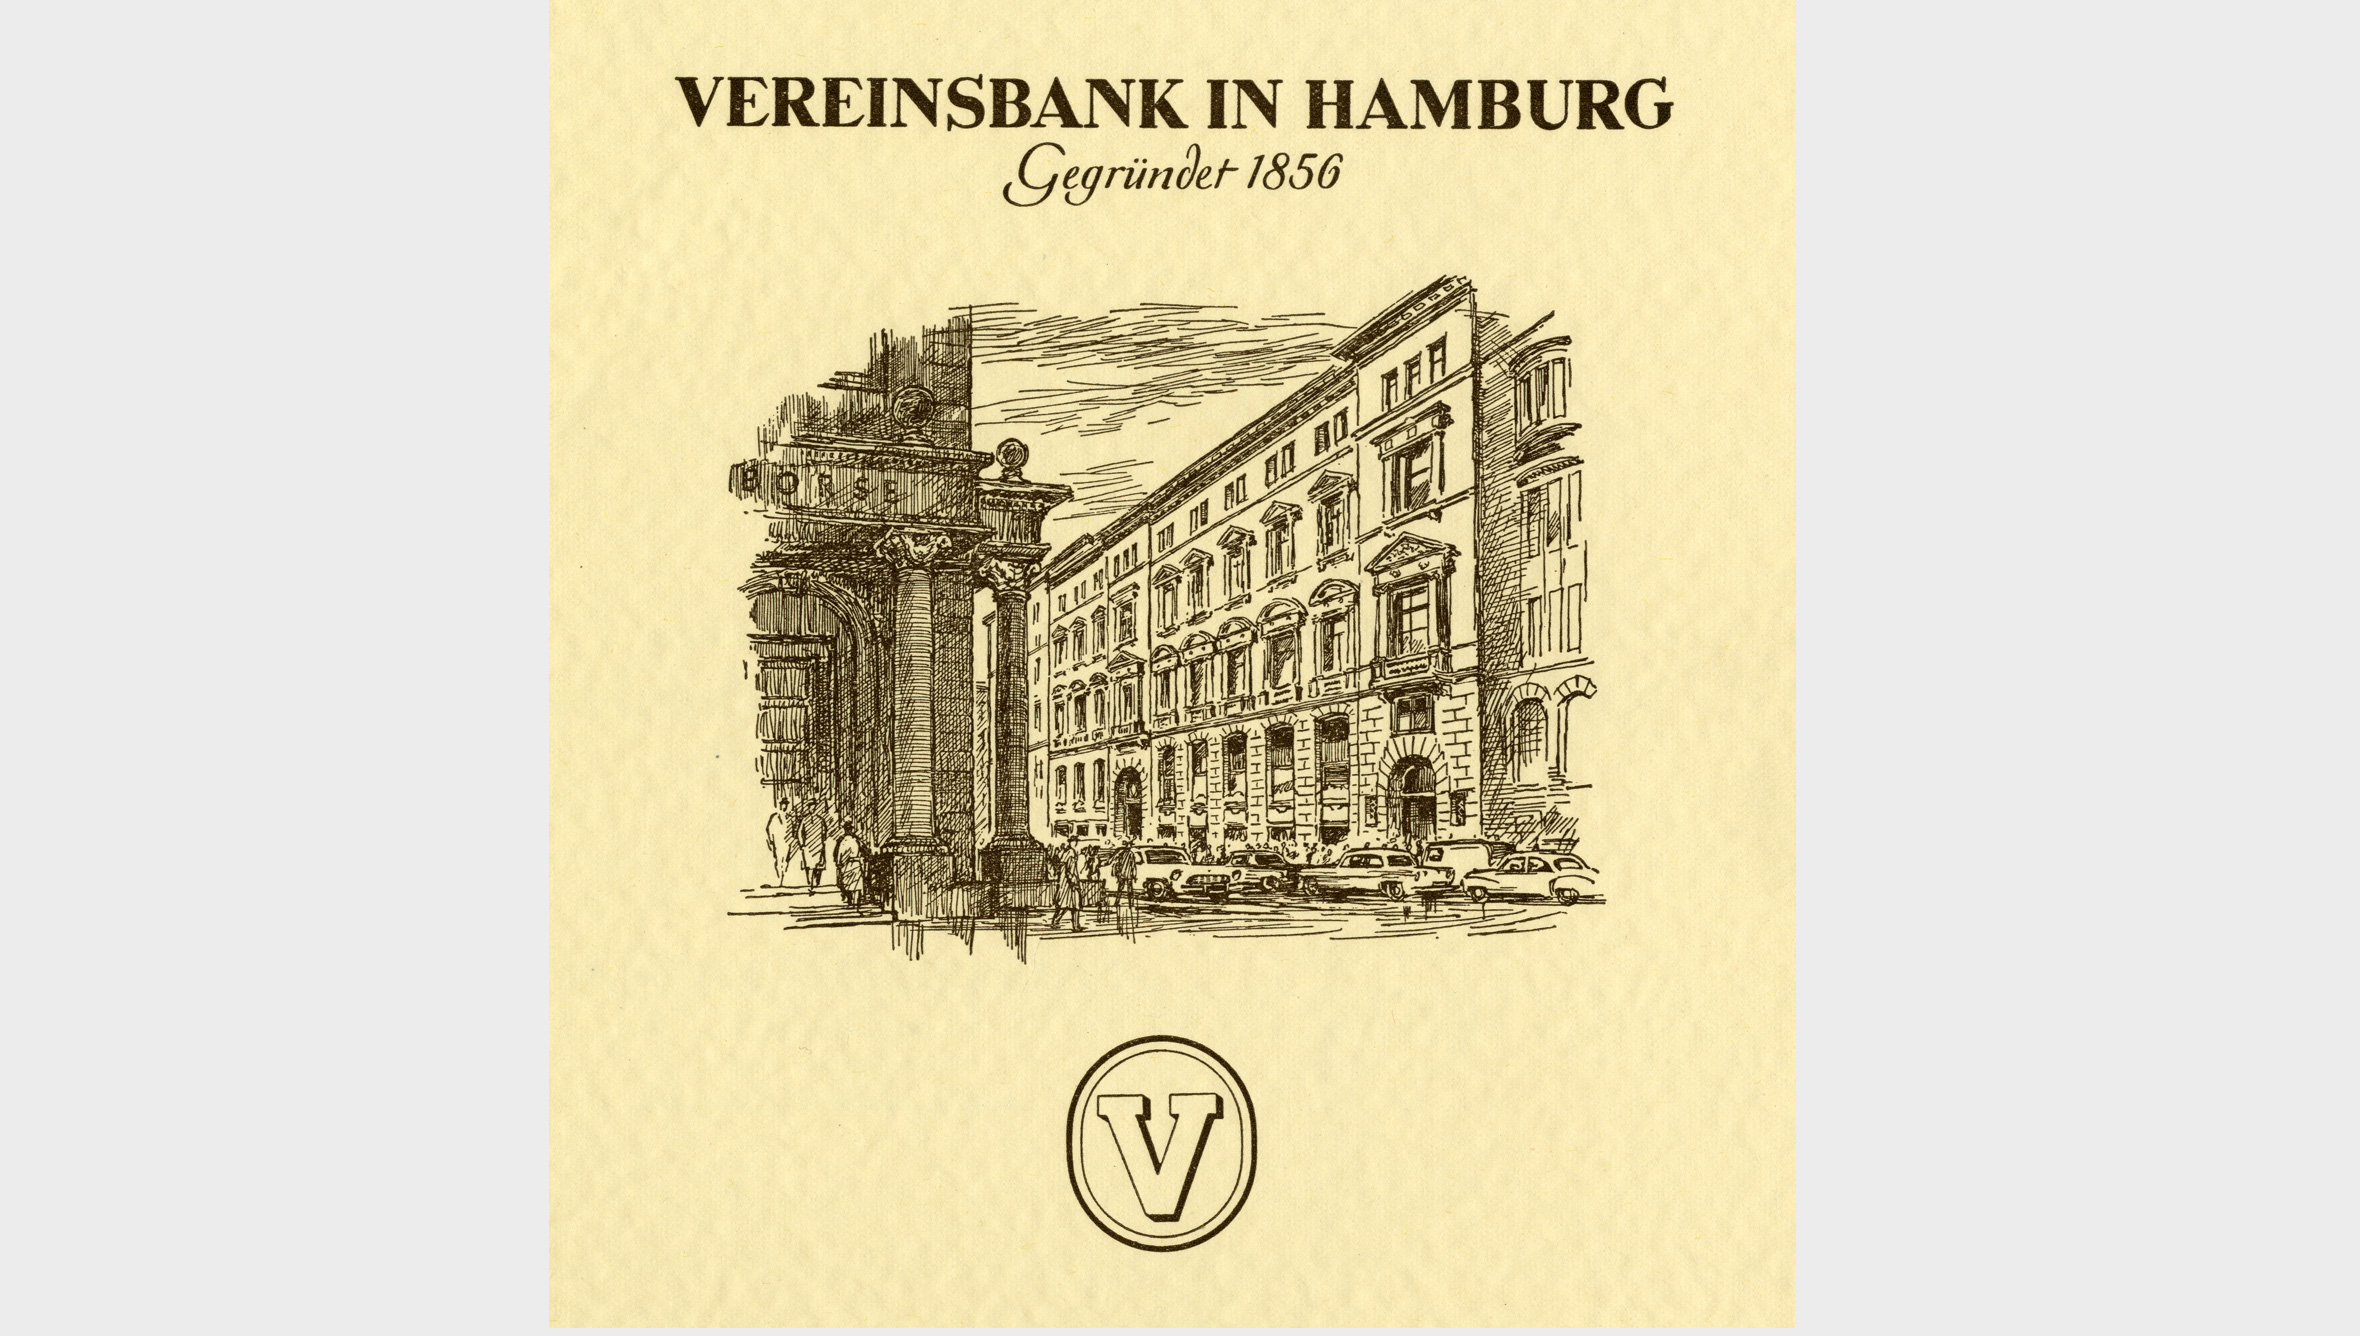 Die Bayerische Vereinsbank beteiligte sich zunehmend an anderen Instituten. 1955 erwarb sie 25,4 % der Anteile an der Vereinsbank in Hamburg. 1990 stockte die Bayerische Vereinsbank ihre Beteiligung an der Vereins- und Westbank auf eine Kapitalmehrheit auf.